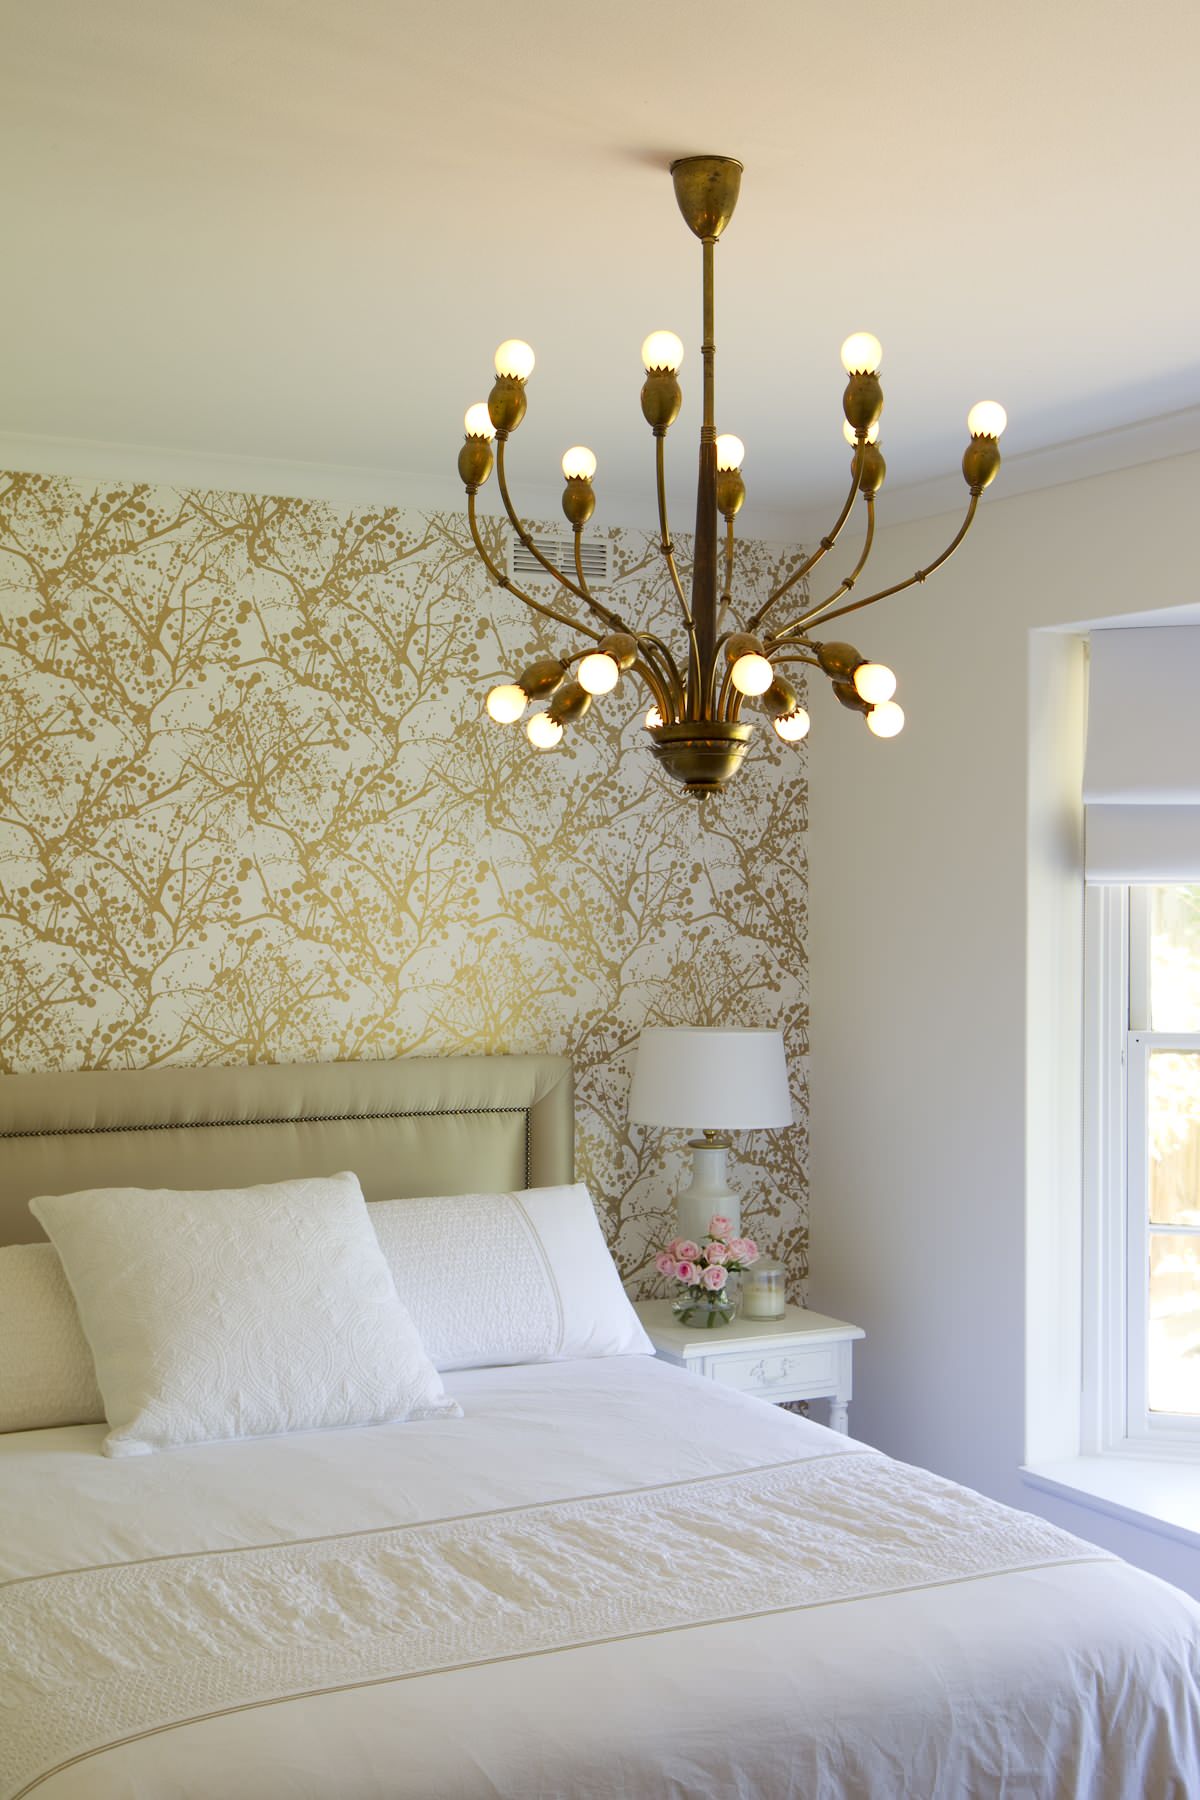 Дизайн интерьера спальни в золотисто-жёлтых тонах